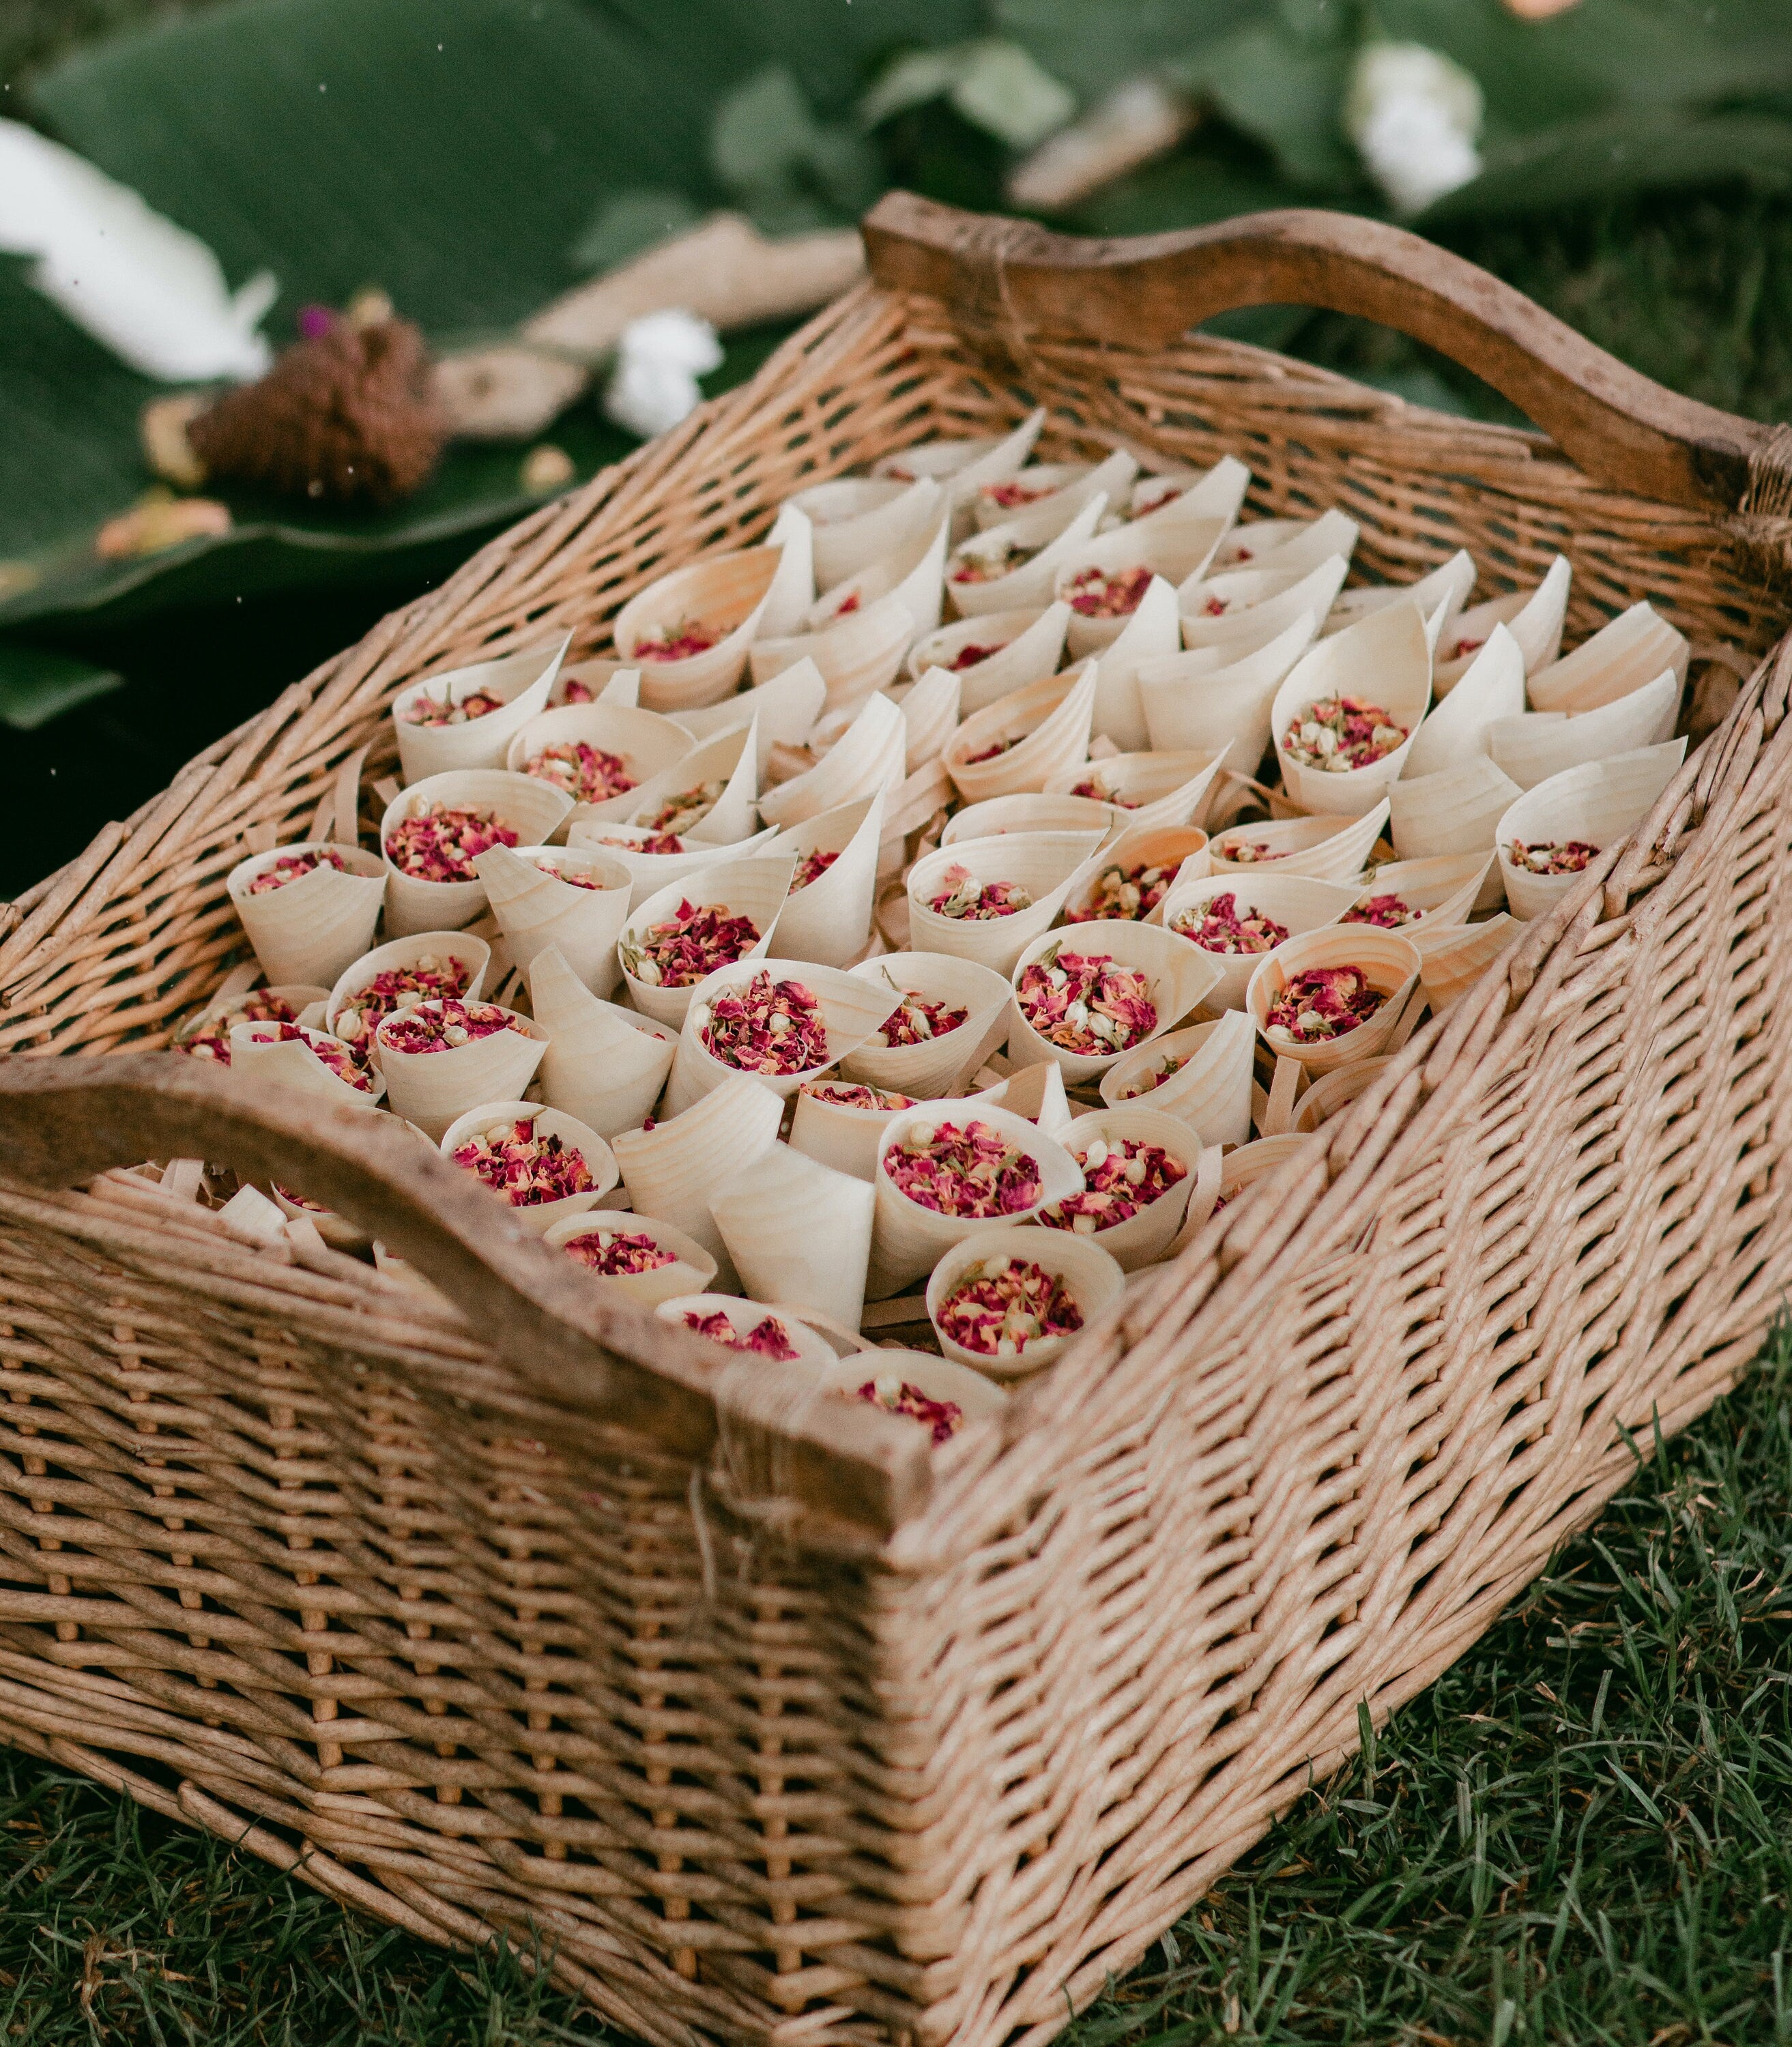 SECONDS - Wedding Confetti Cone | Dried Flower Confetti Cone